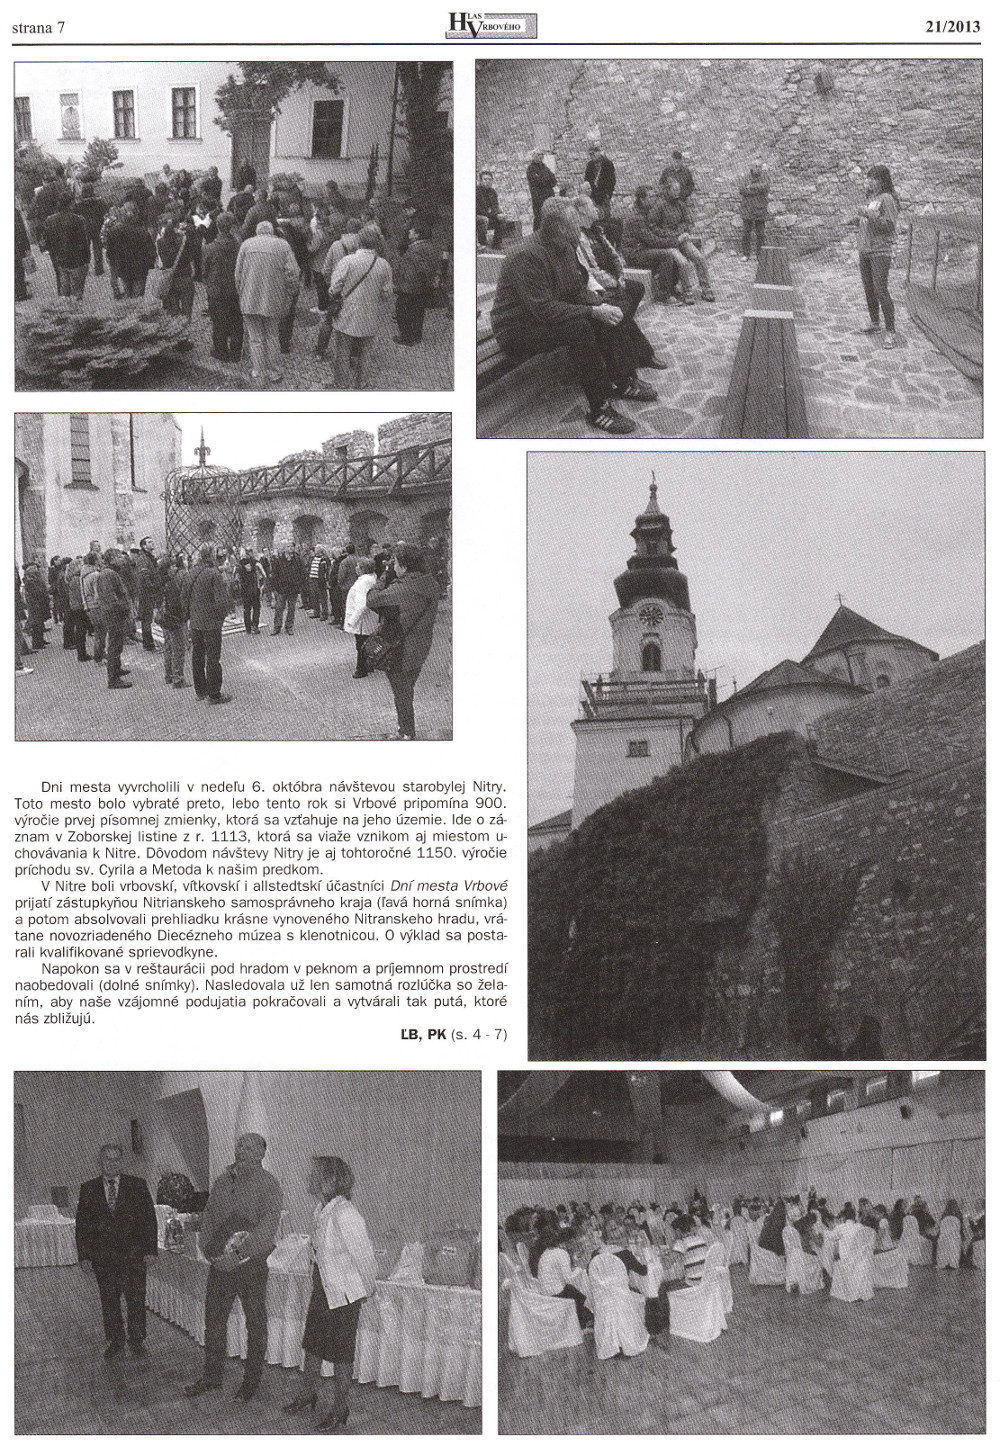 Hlas Vrbového 21/2013, strana 7